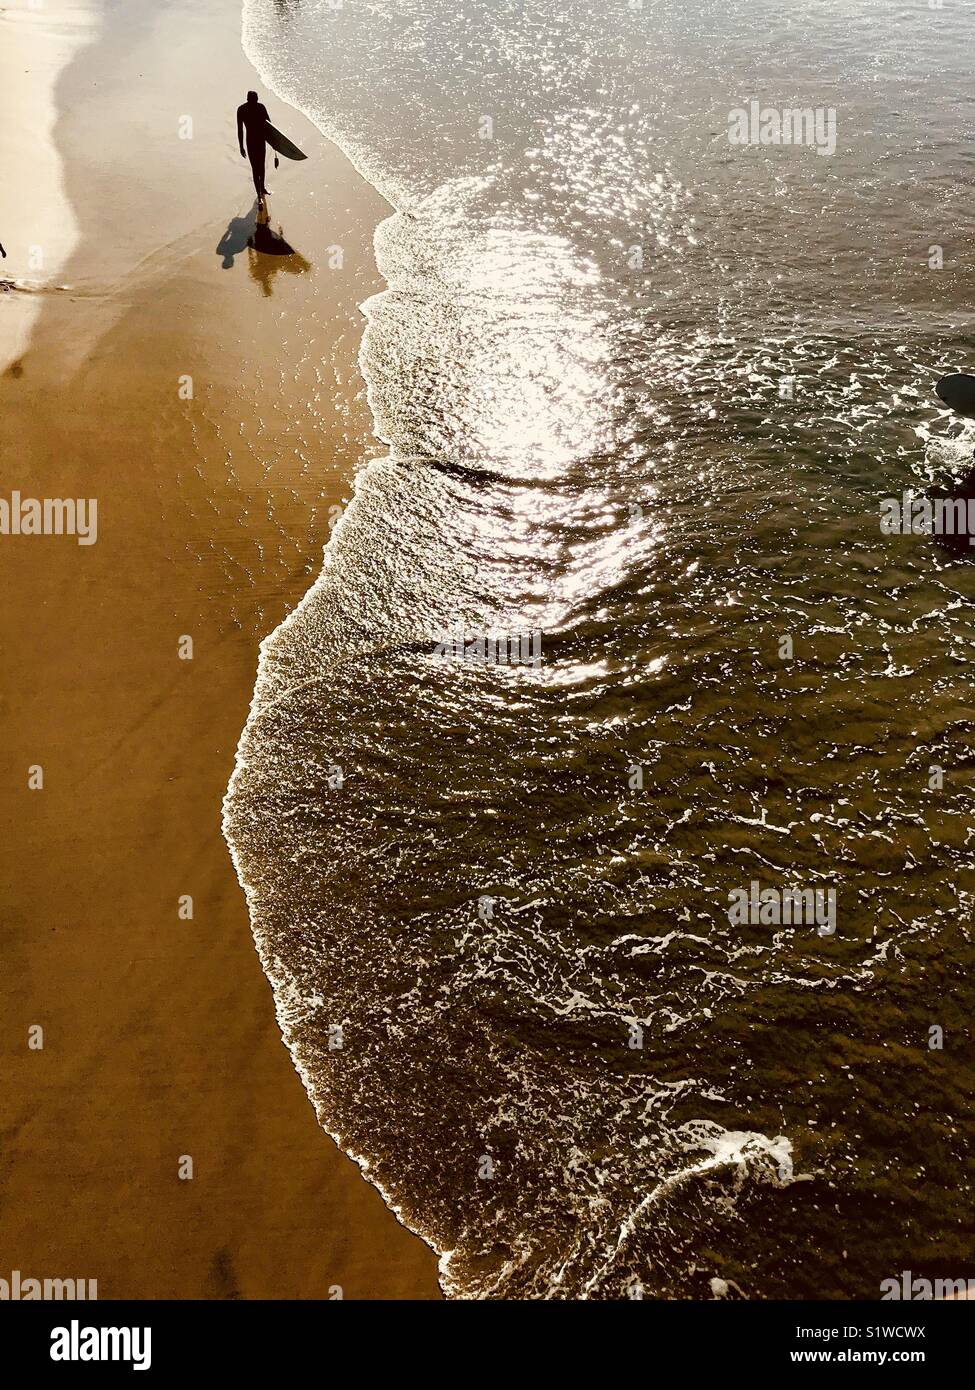 Surfer am Strand aufwachen. Manhattan Beach, Kalifornien USA. Stockfoto